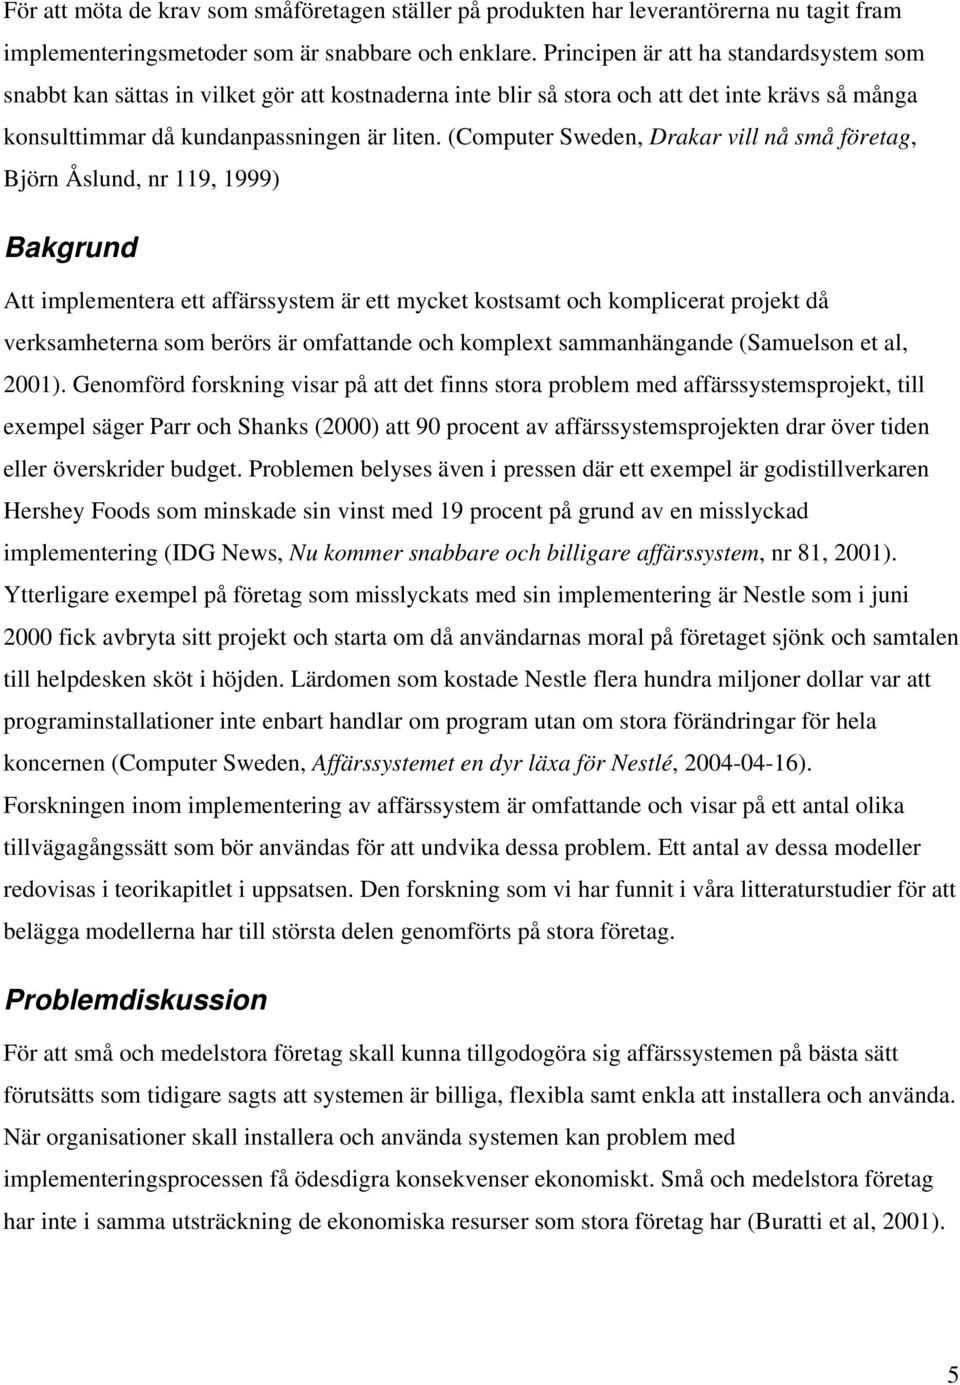 (Computer Sweden, Drakar vill nå små företag, Björn Åslund, nr 119, 1999) Bakgrund Att implementera ett affärssystem är ett mycket kostsamt och komplicerat projekt då verksamheterna som berörs är